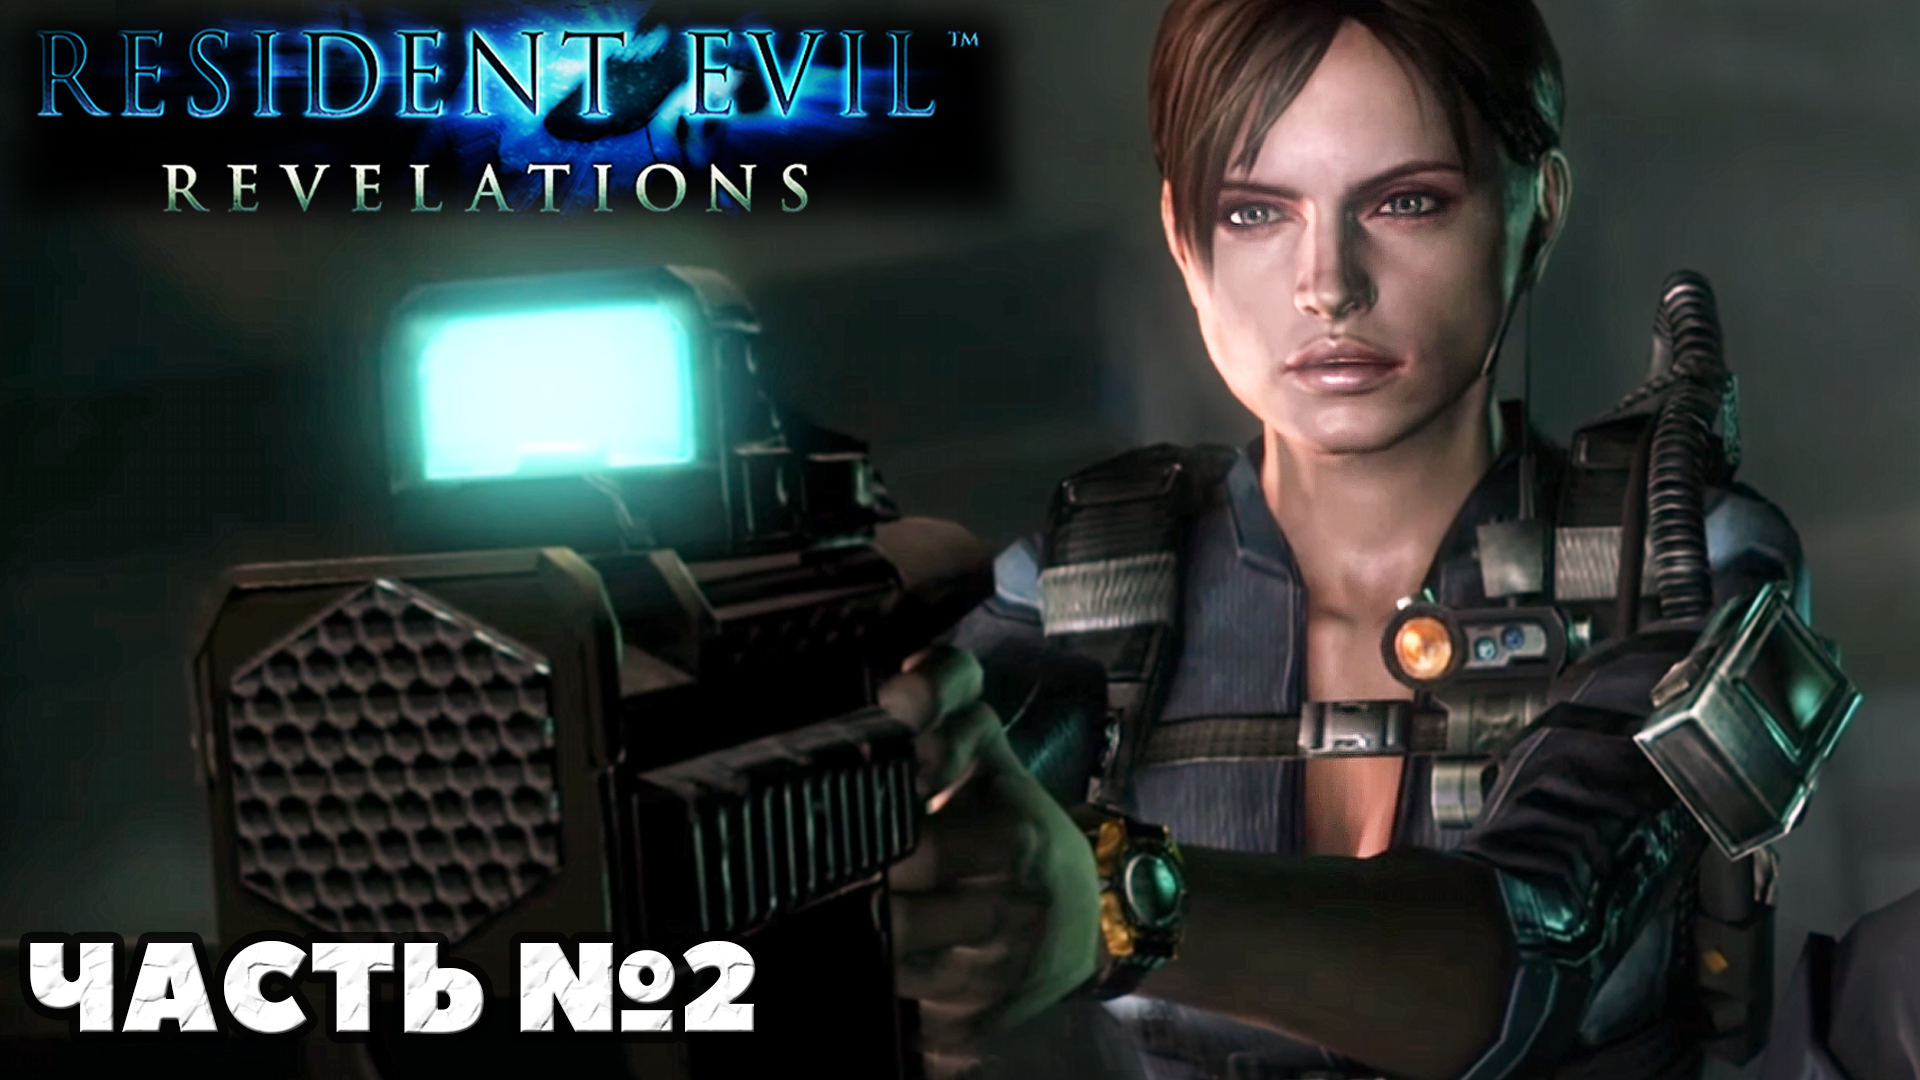 Resident Evil Revelations - Прохождение. Часть №2. #residentevil #revelations #stream